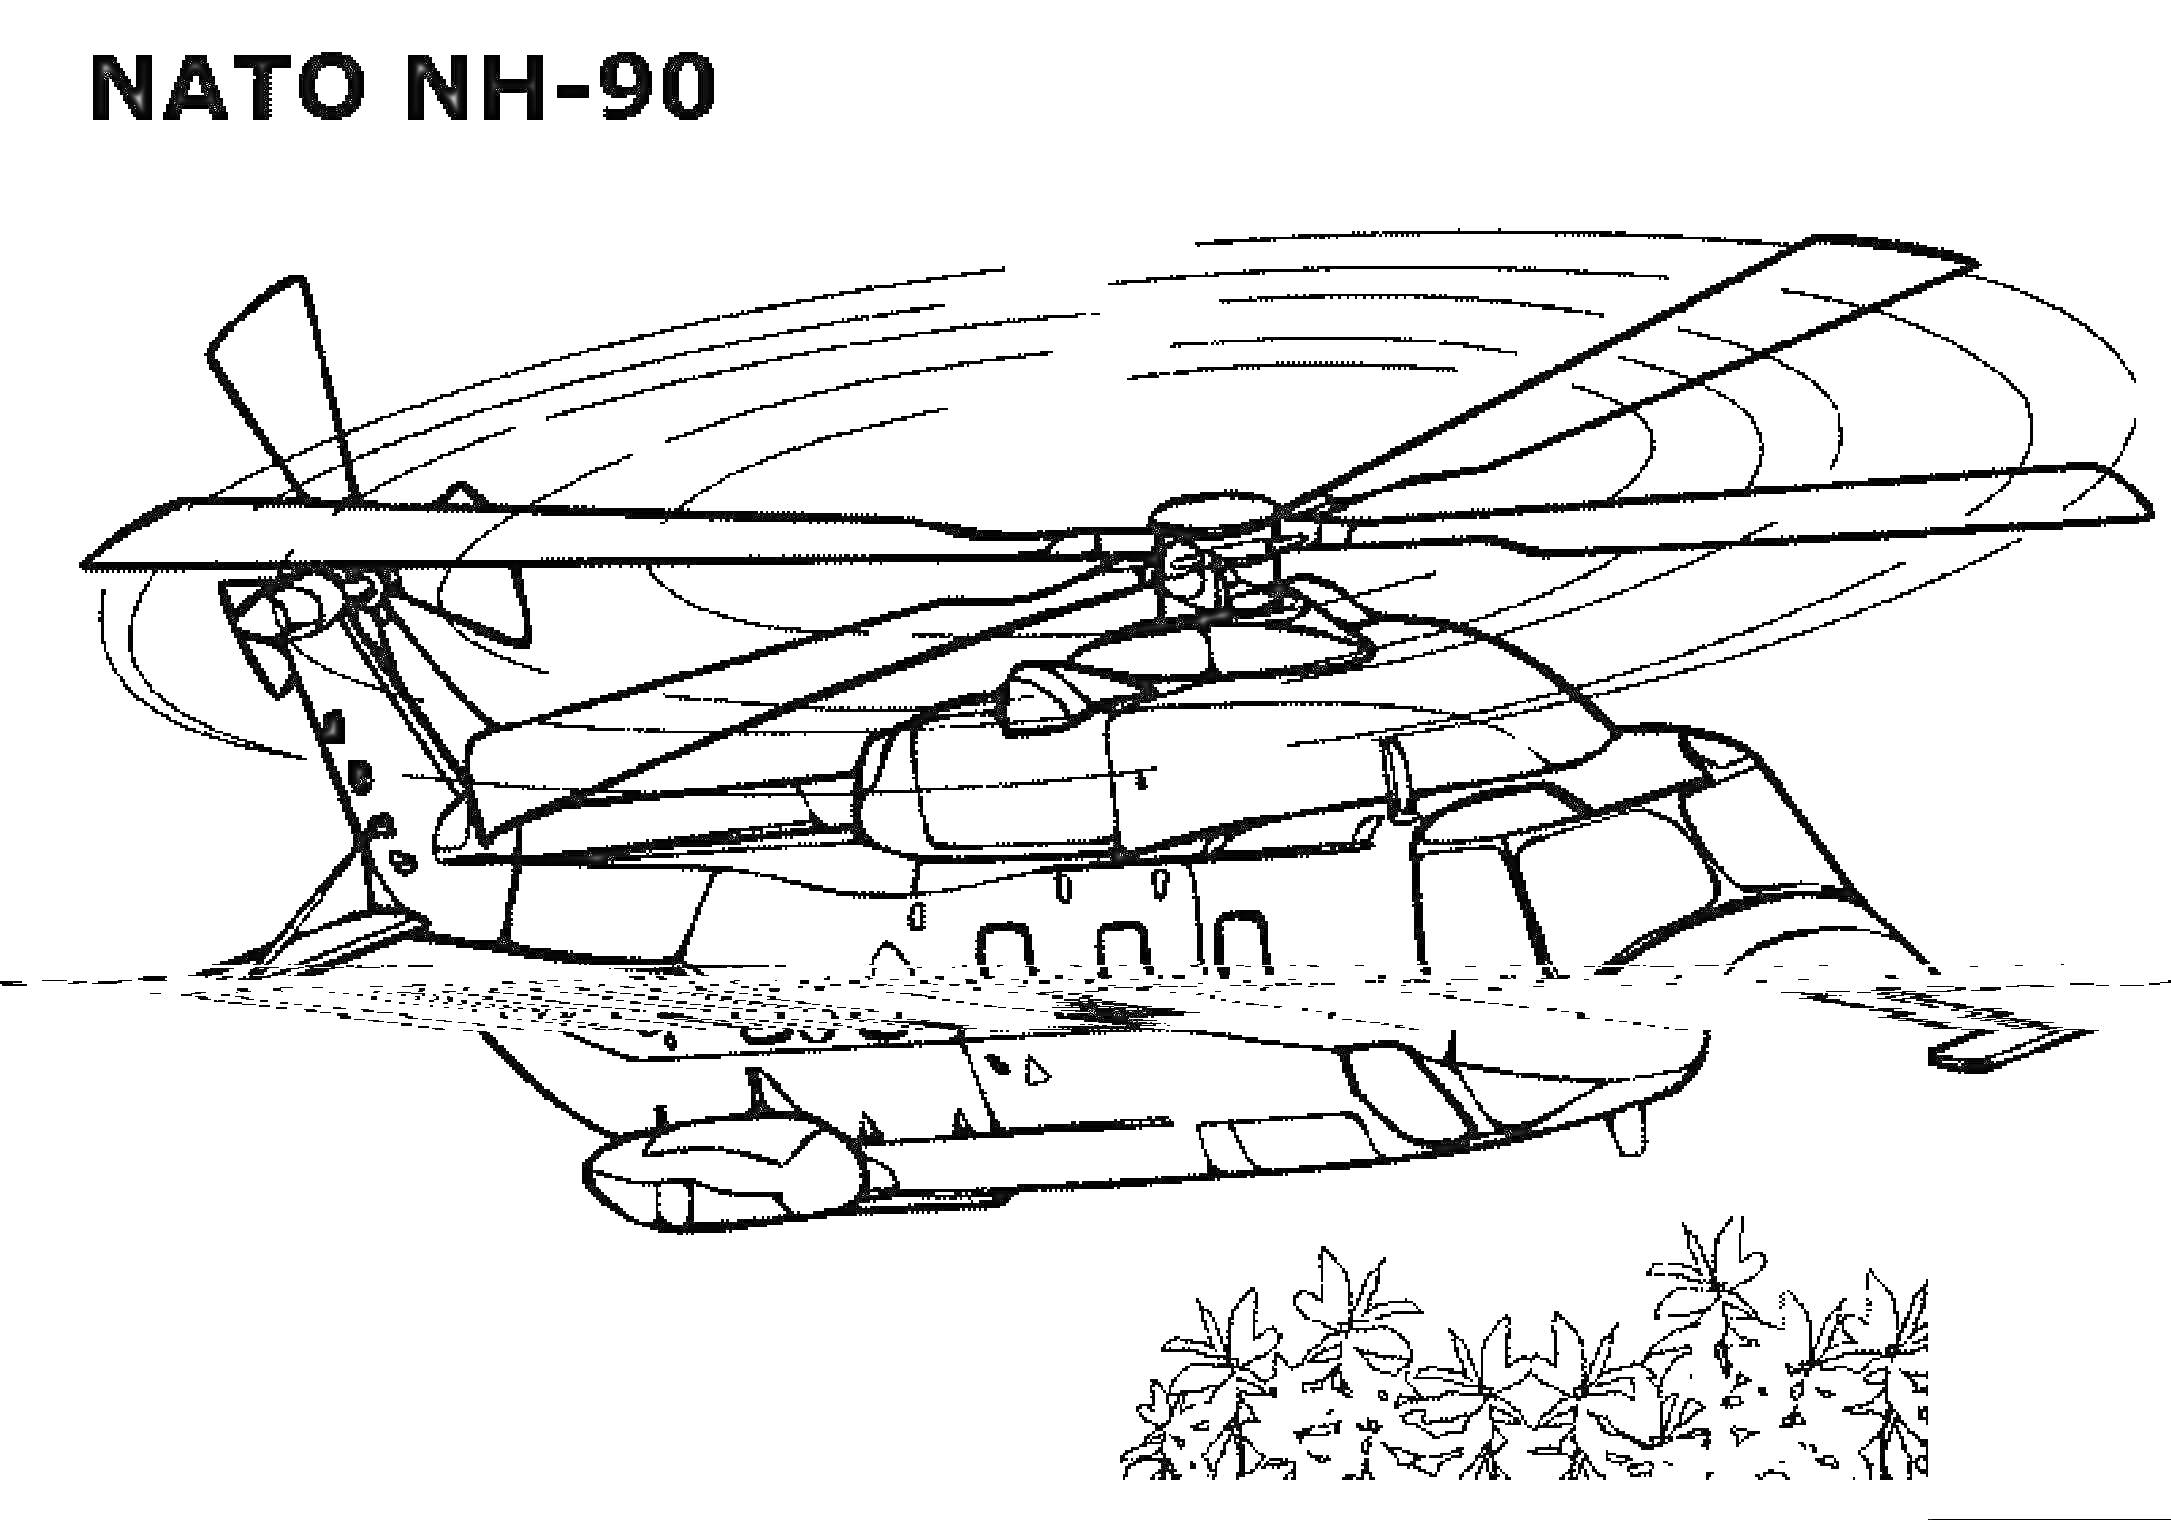 Вертолет NATO NH-90 пролетает над деревьями в полете